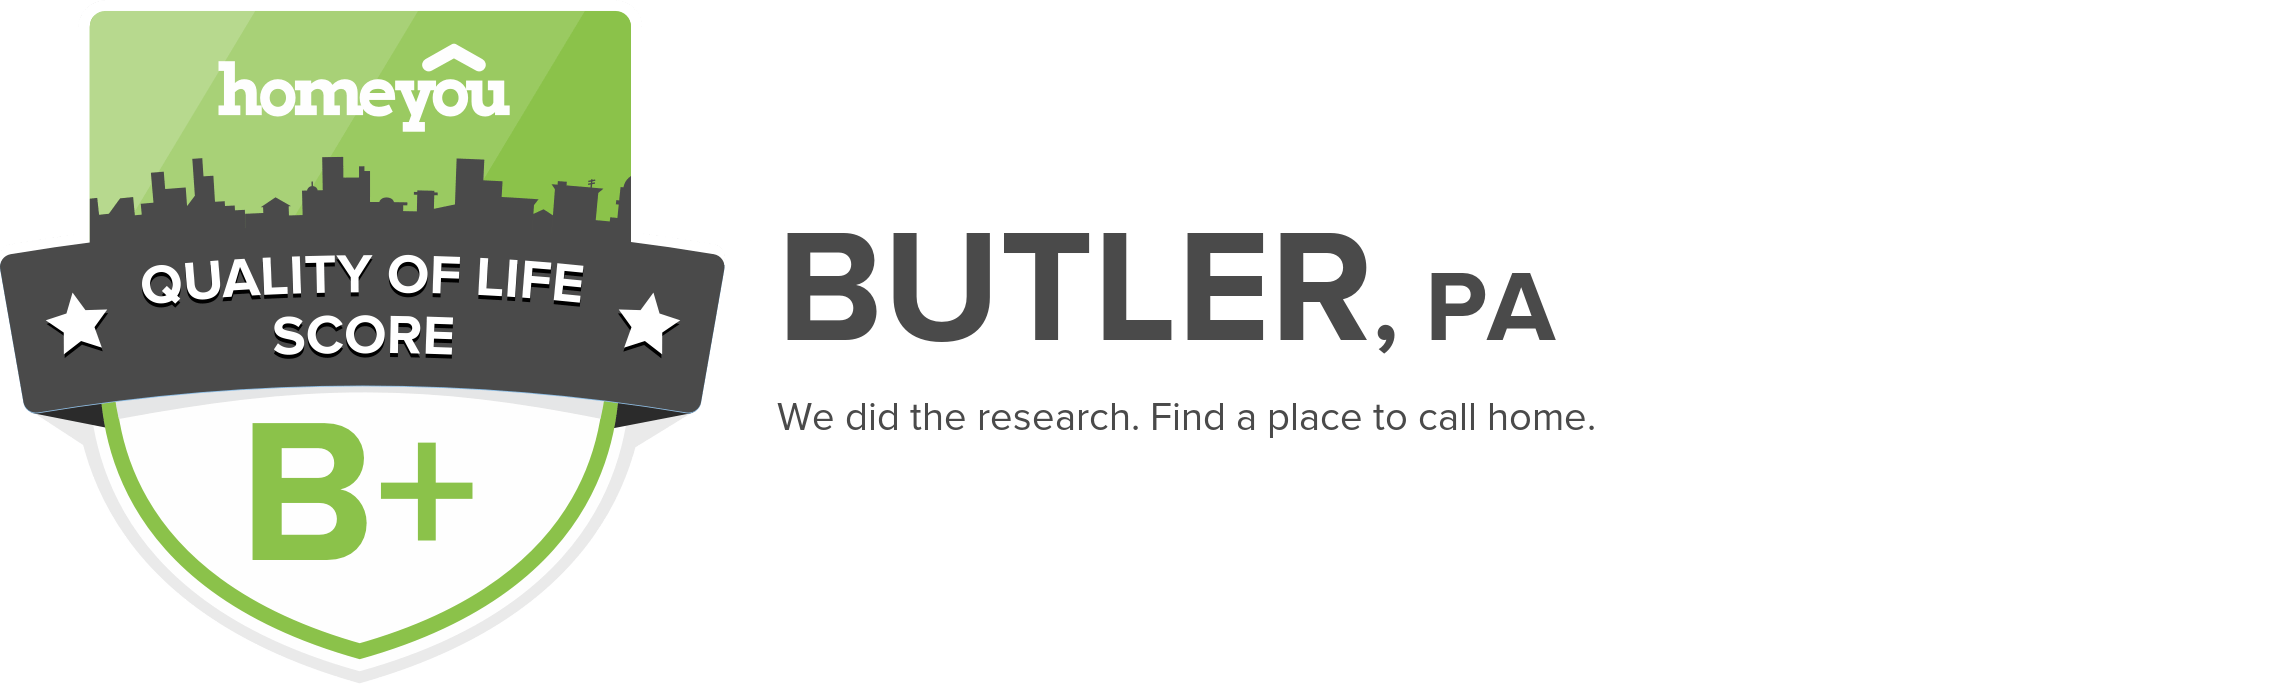 Butler, PA